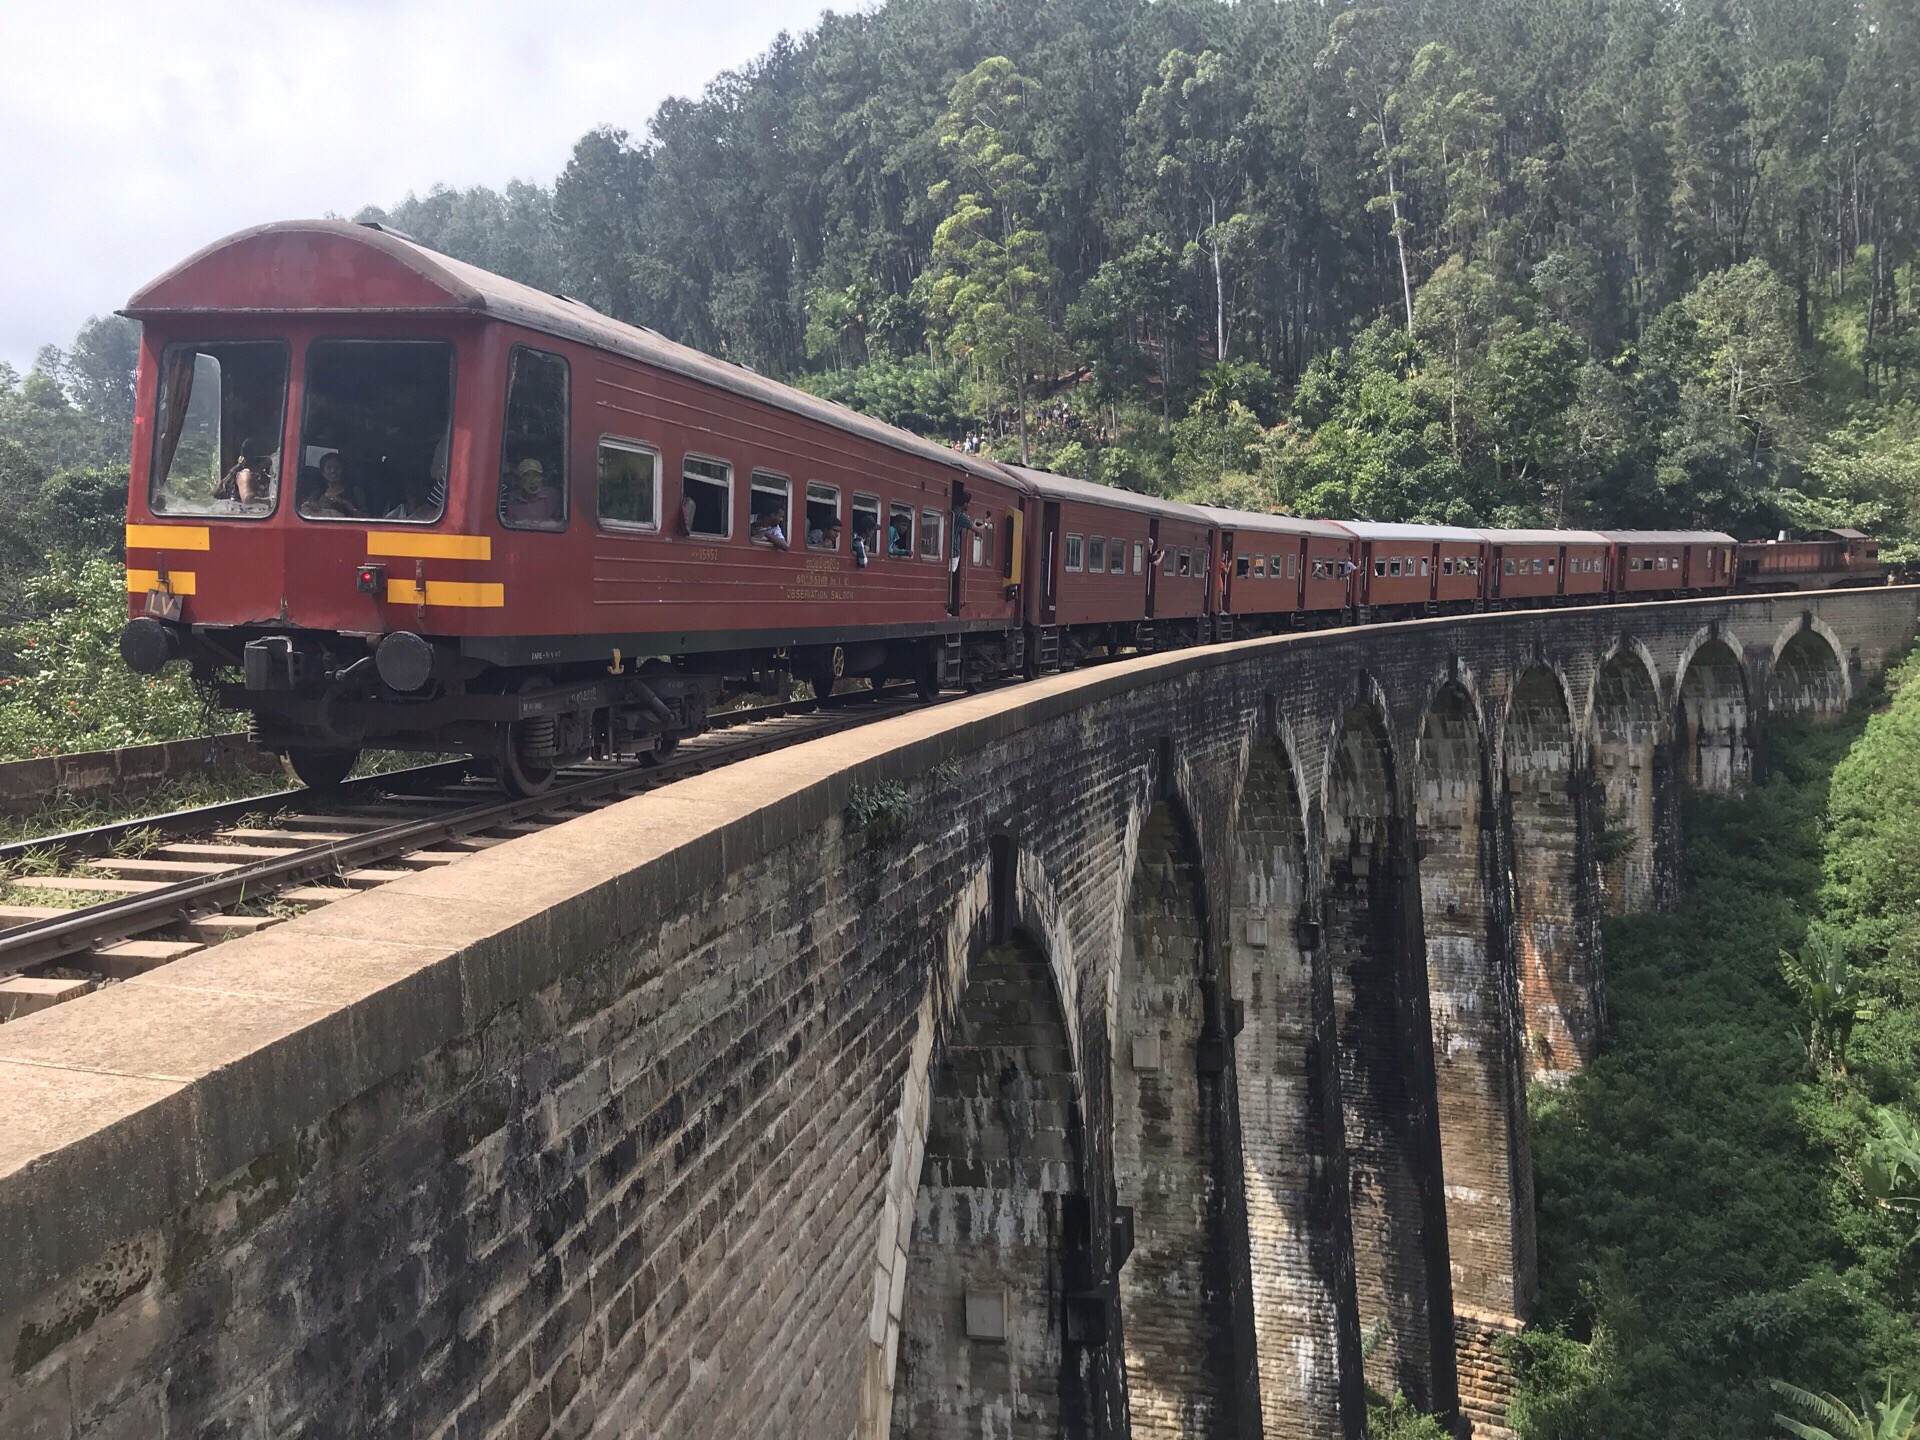 茶园小火车，网红打卡点，火车与桥及山，三者相互映衬。